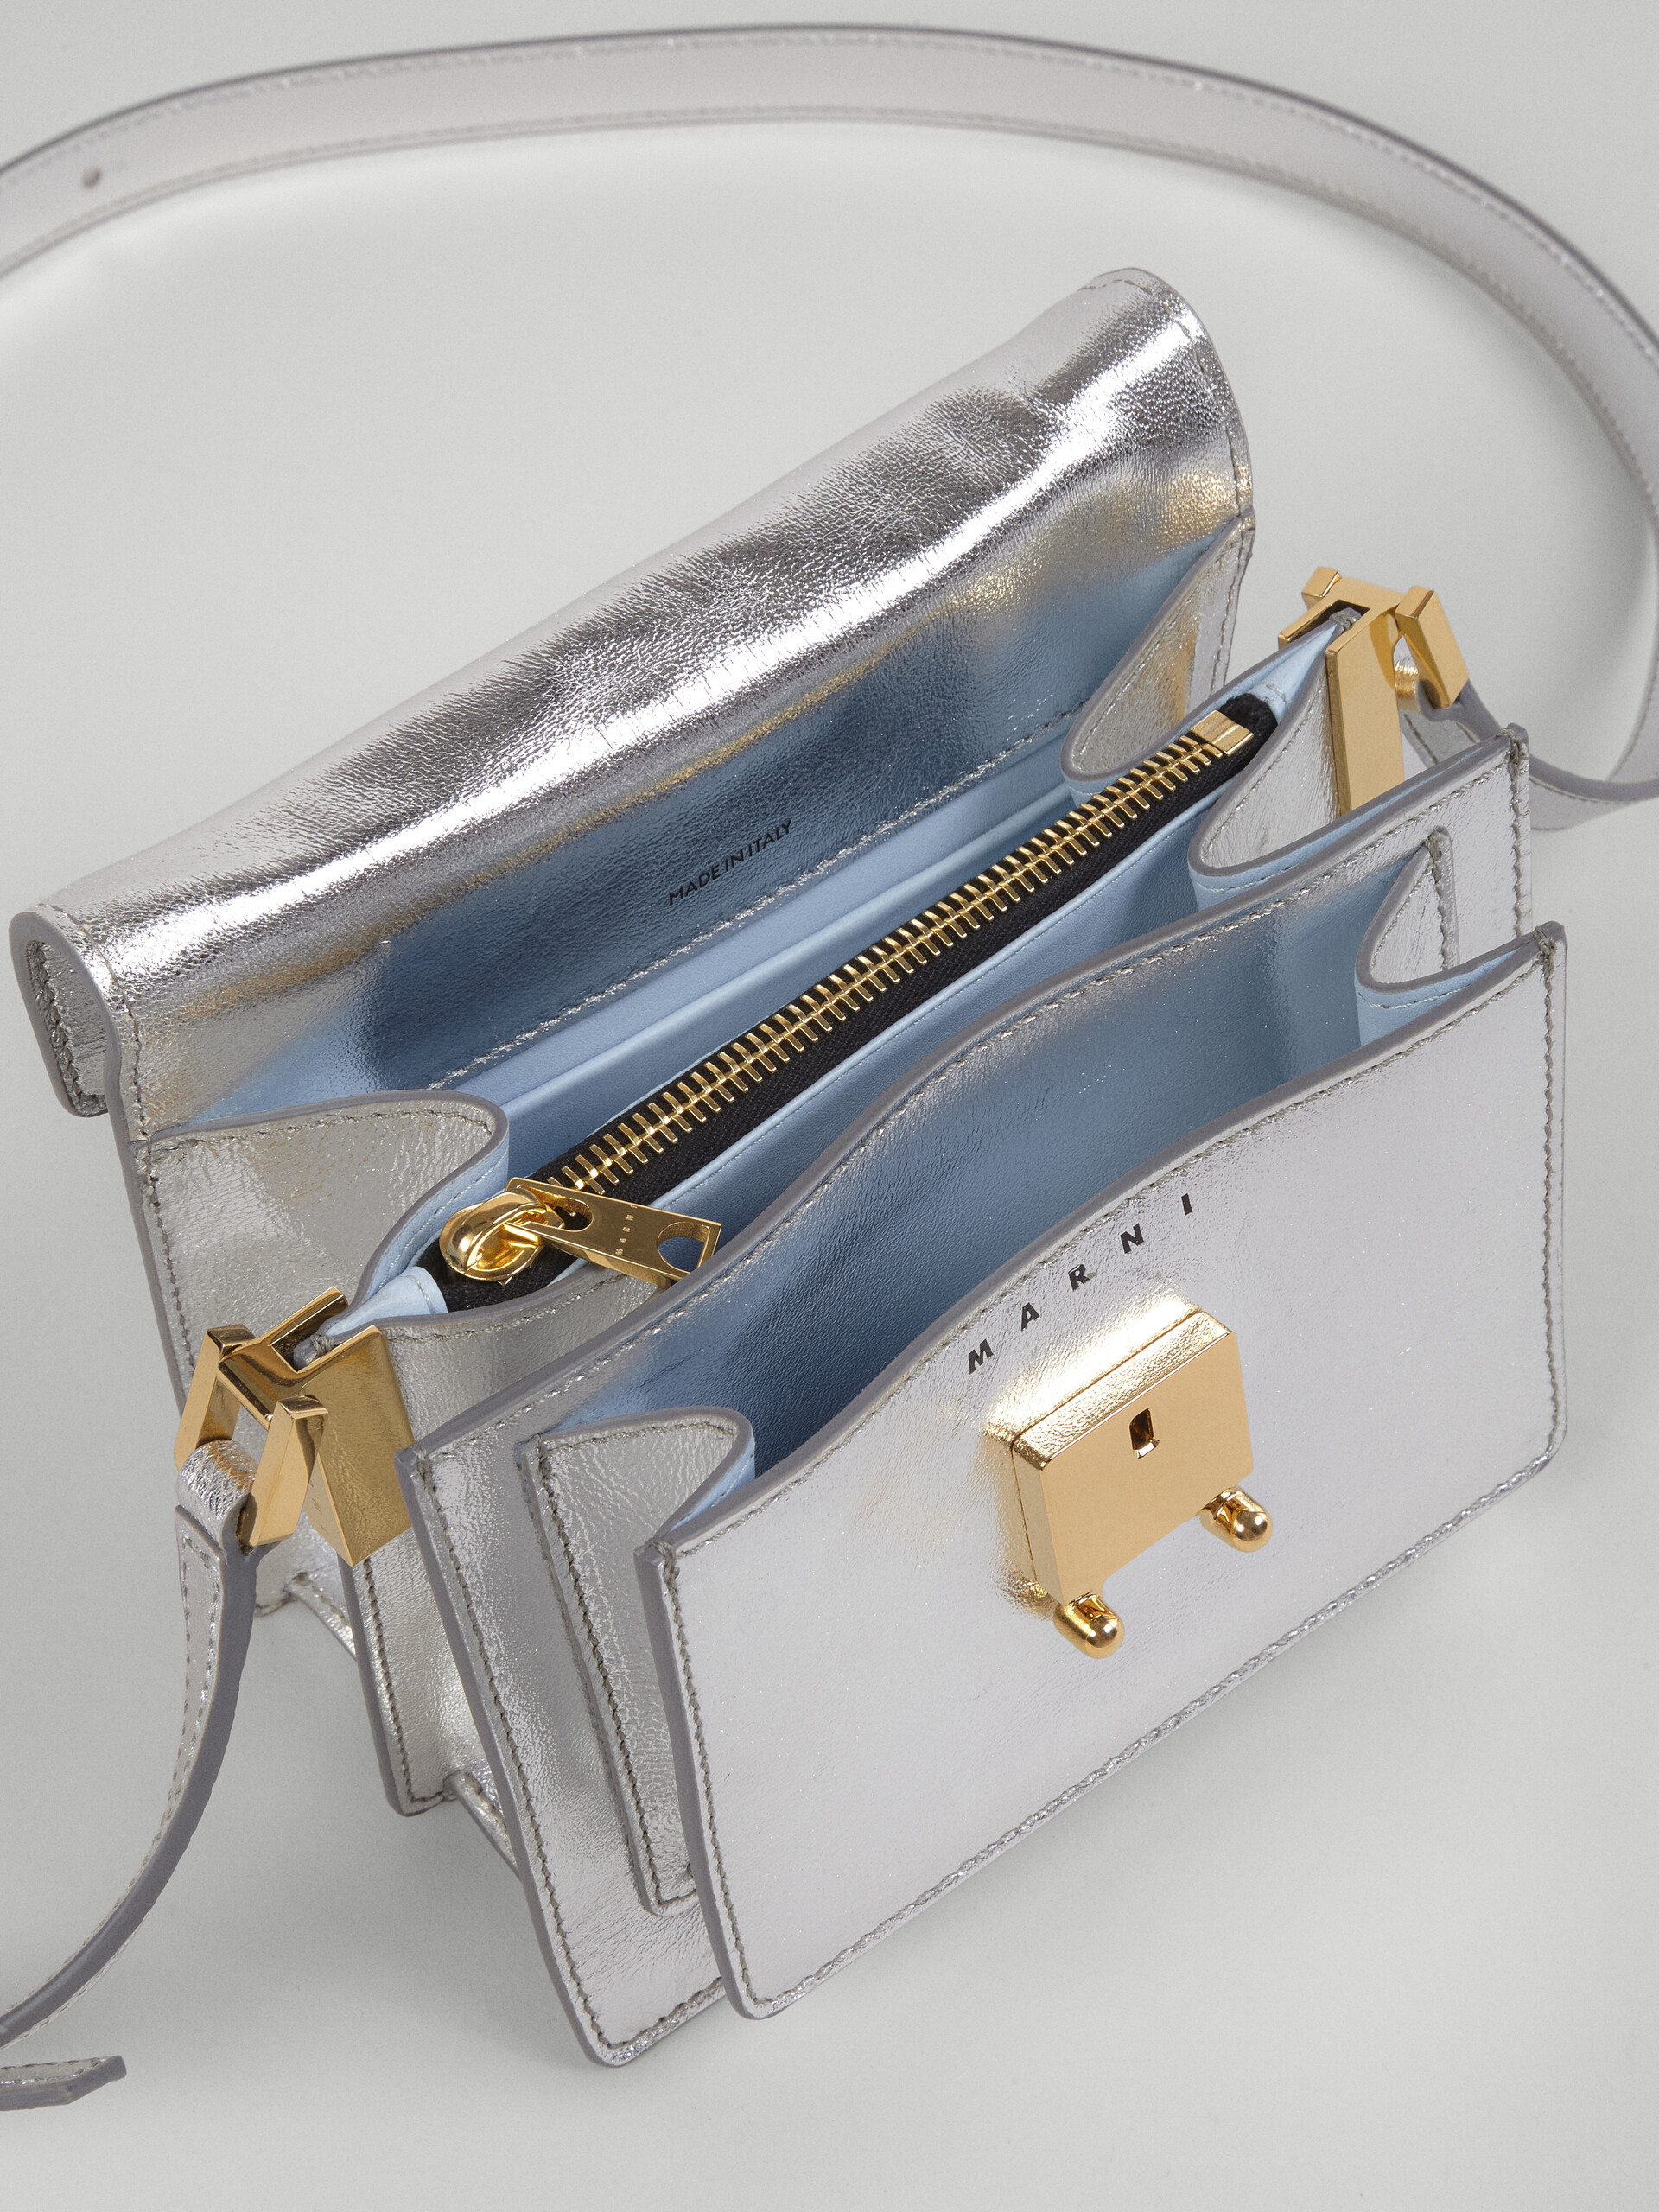 TRUNK SOFT bag in pelle metallizzata argento - Borse a spalla - Image 3